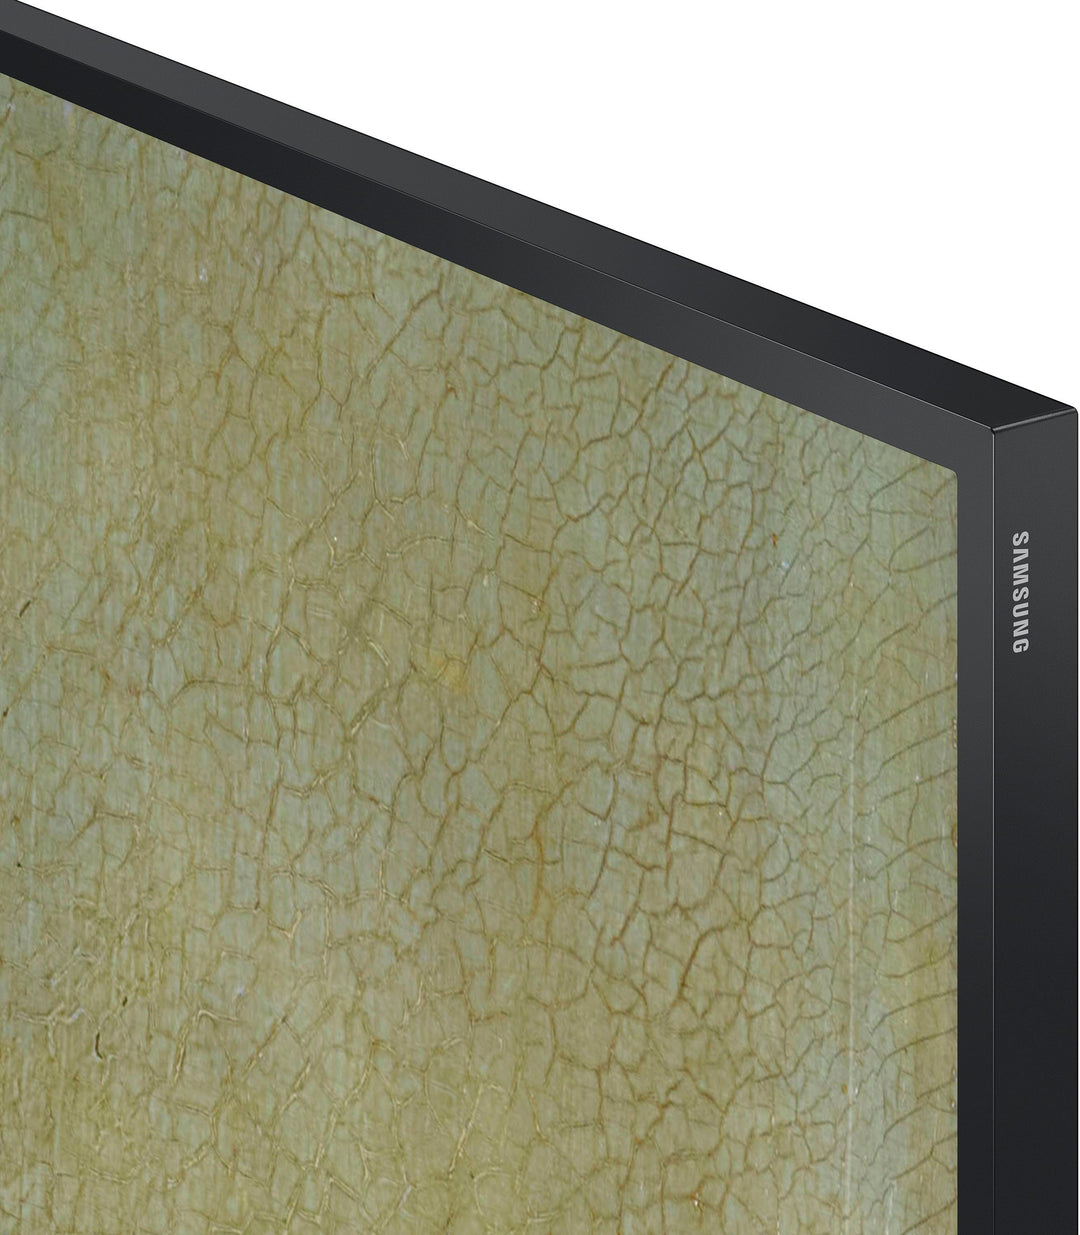 Samsung - 43" Class The Frame QLED 4k Smart Tizen TV_13